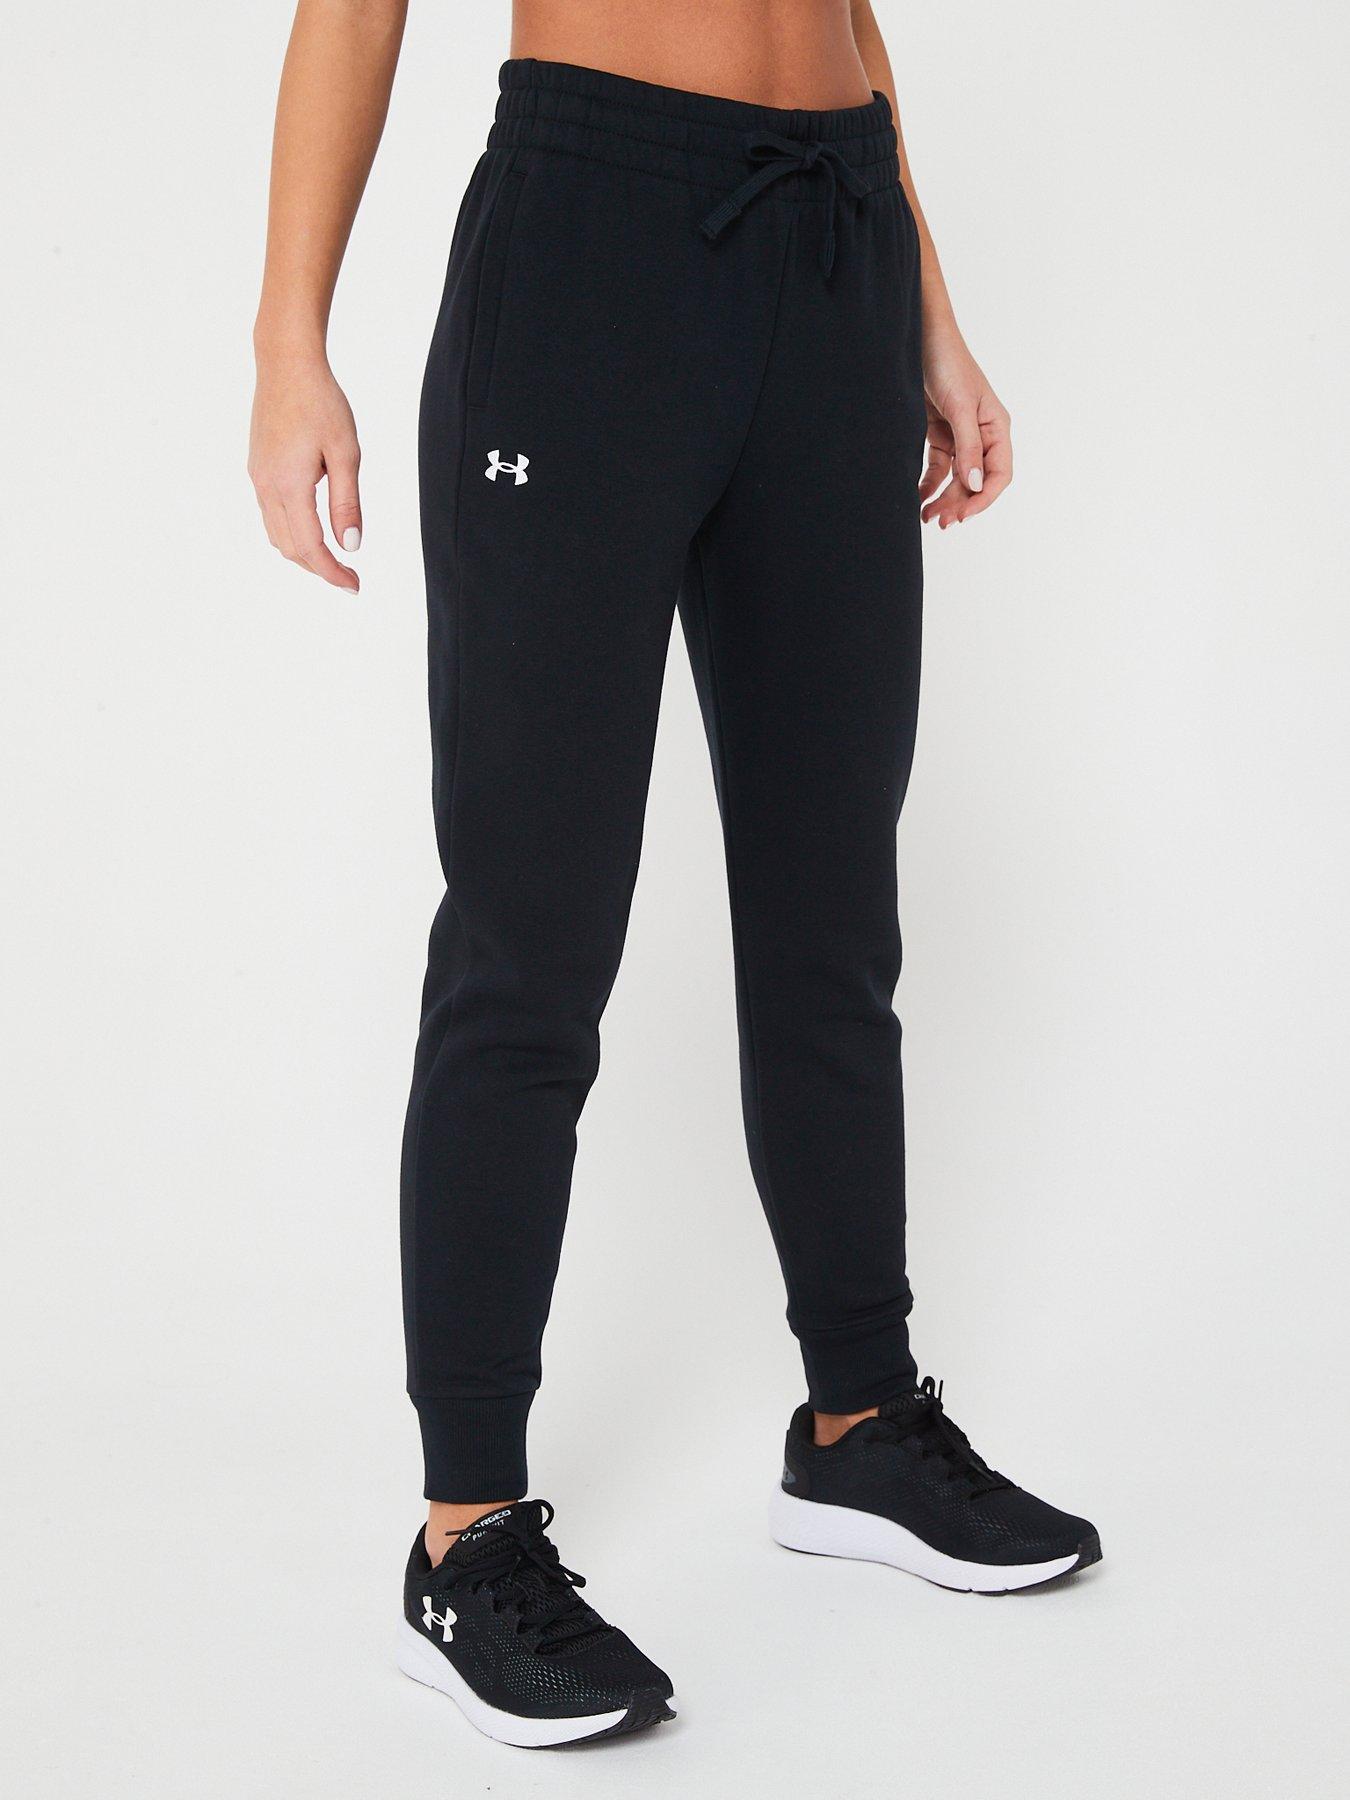 Nike Sportswear Women's Easy Joggers - Black/White